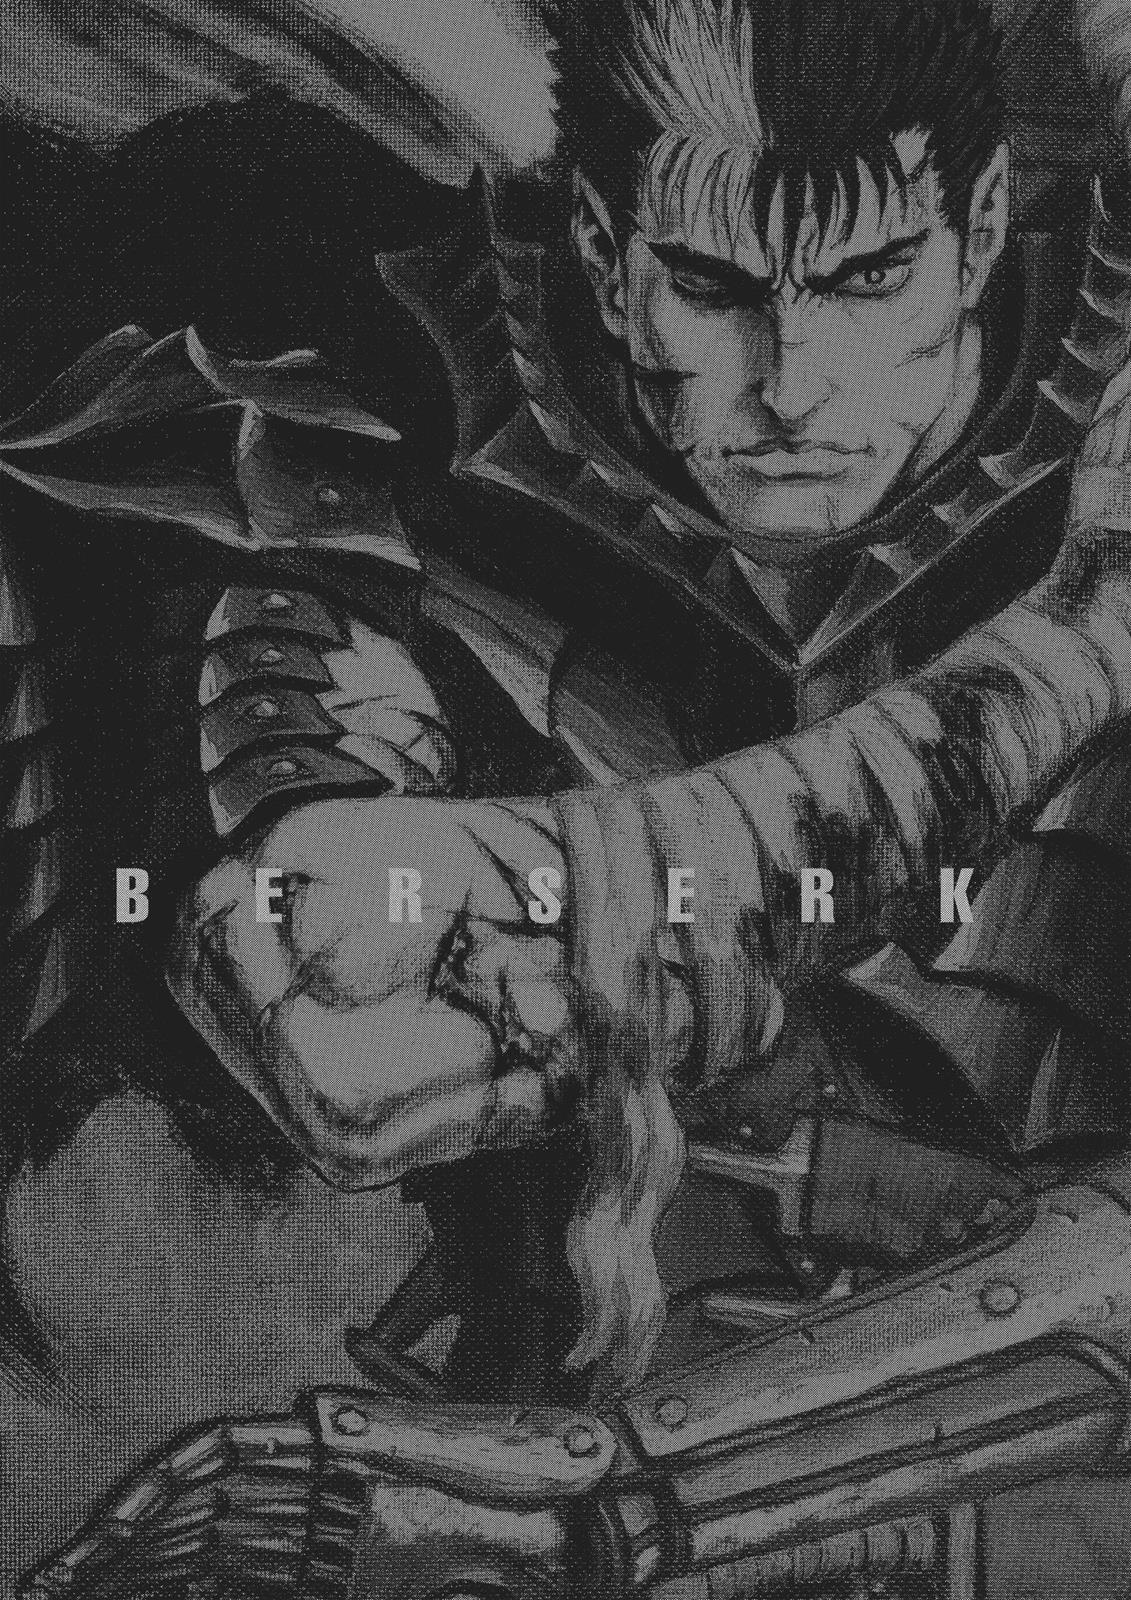 Berserk Manga Chapter 351 image 31